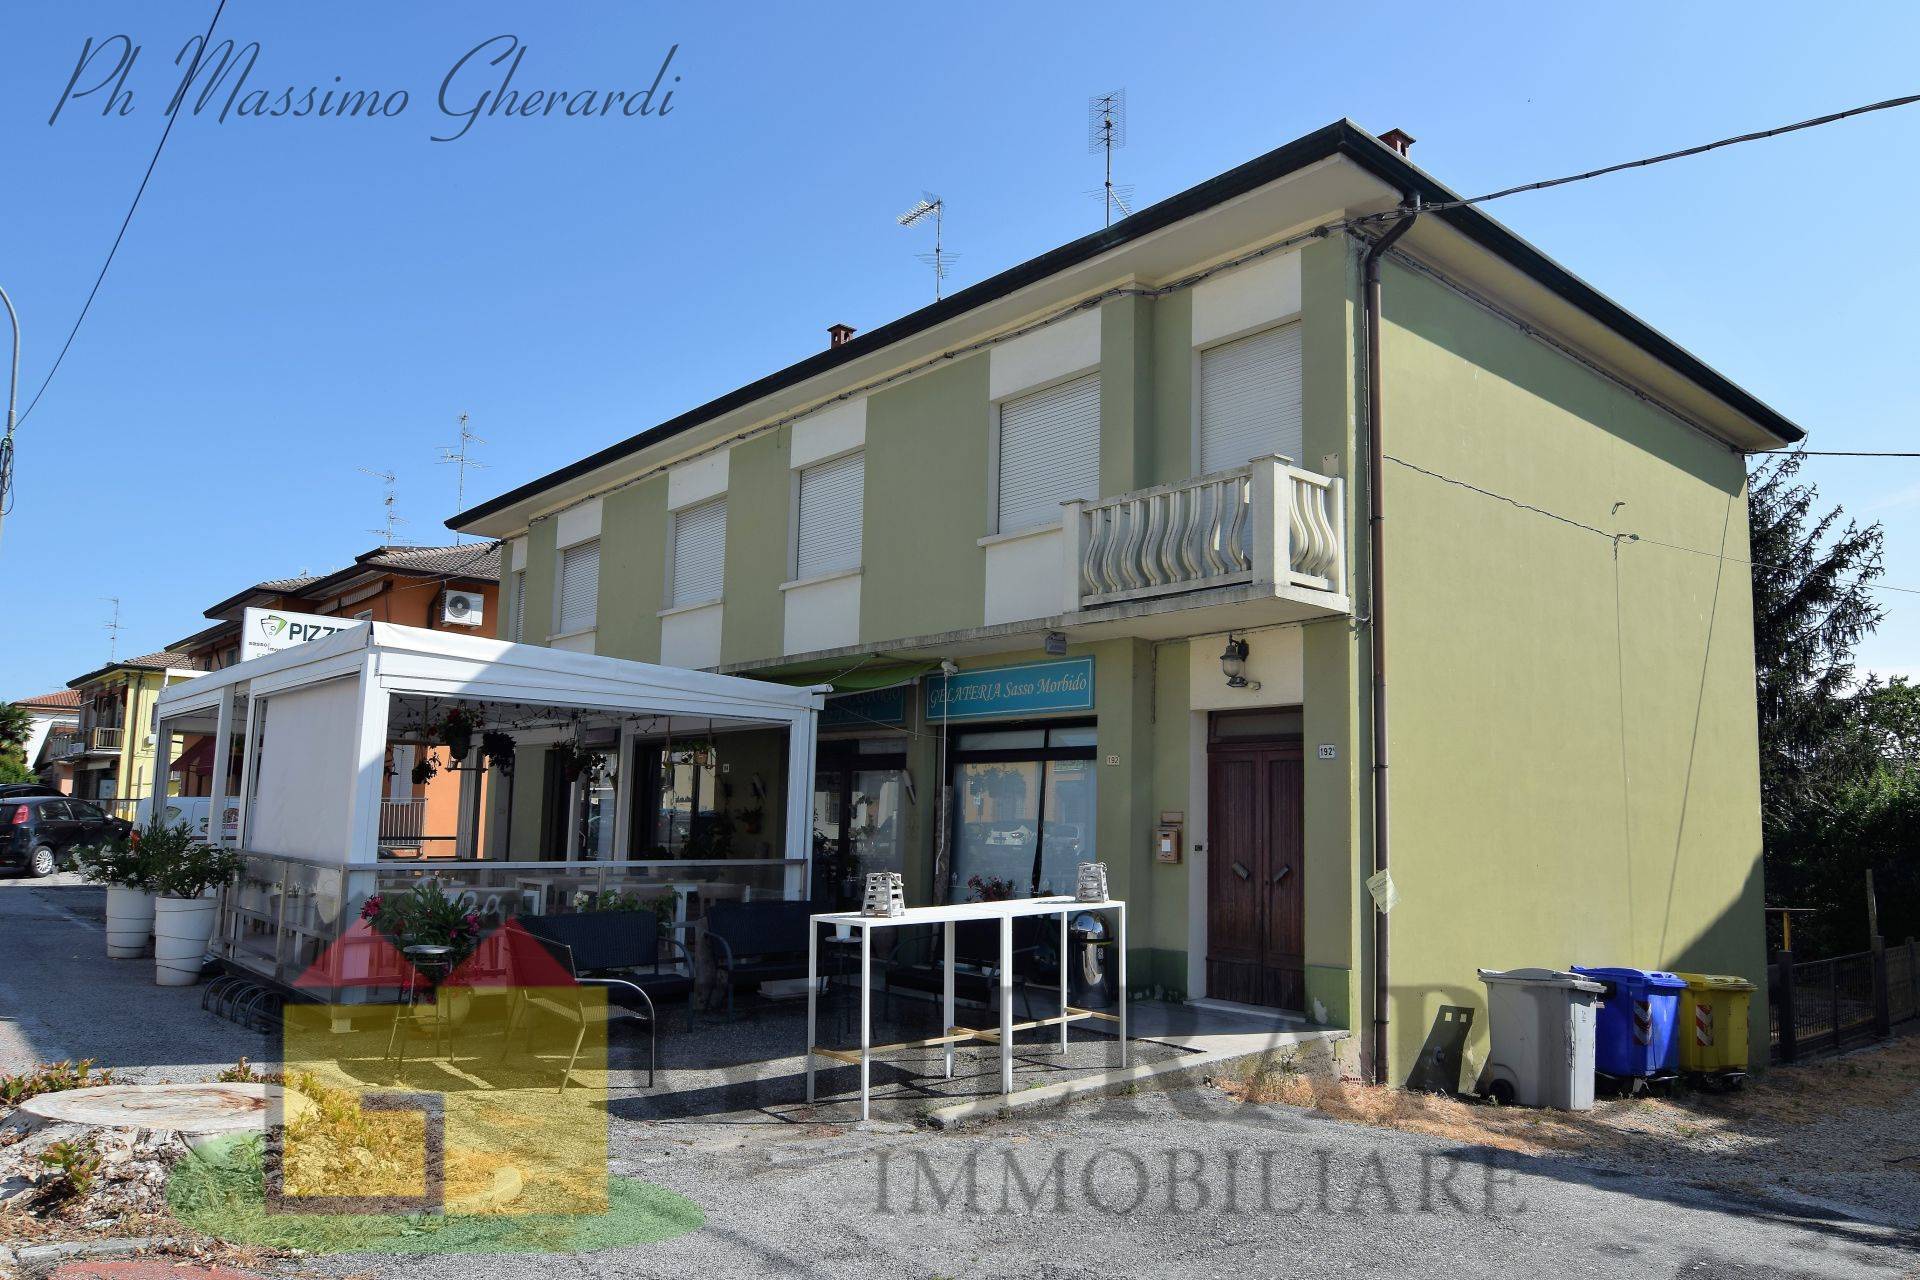 Villa in vendita a Vigarano Mainarda, 10 locali, zona Località: VigaranoPieve, prezzo € 213.000 | PortaleAgenzieImmobiliari.it